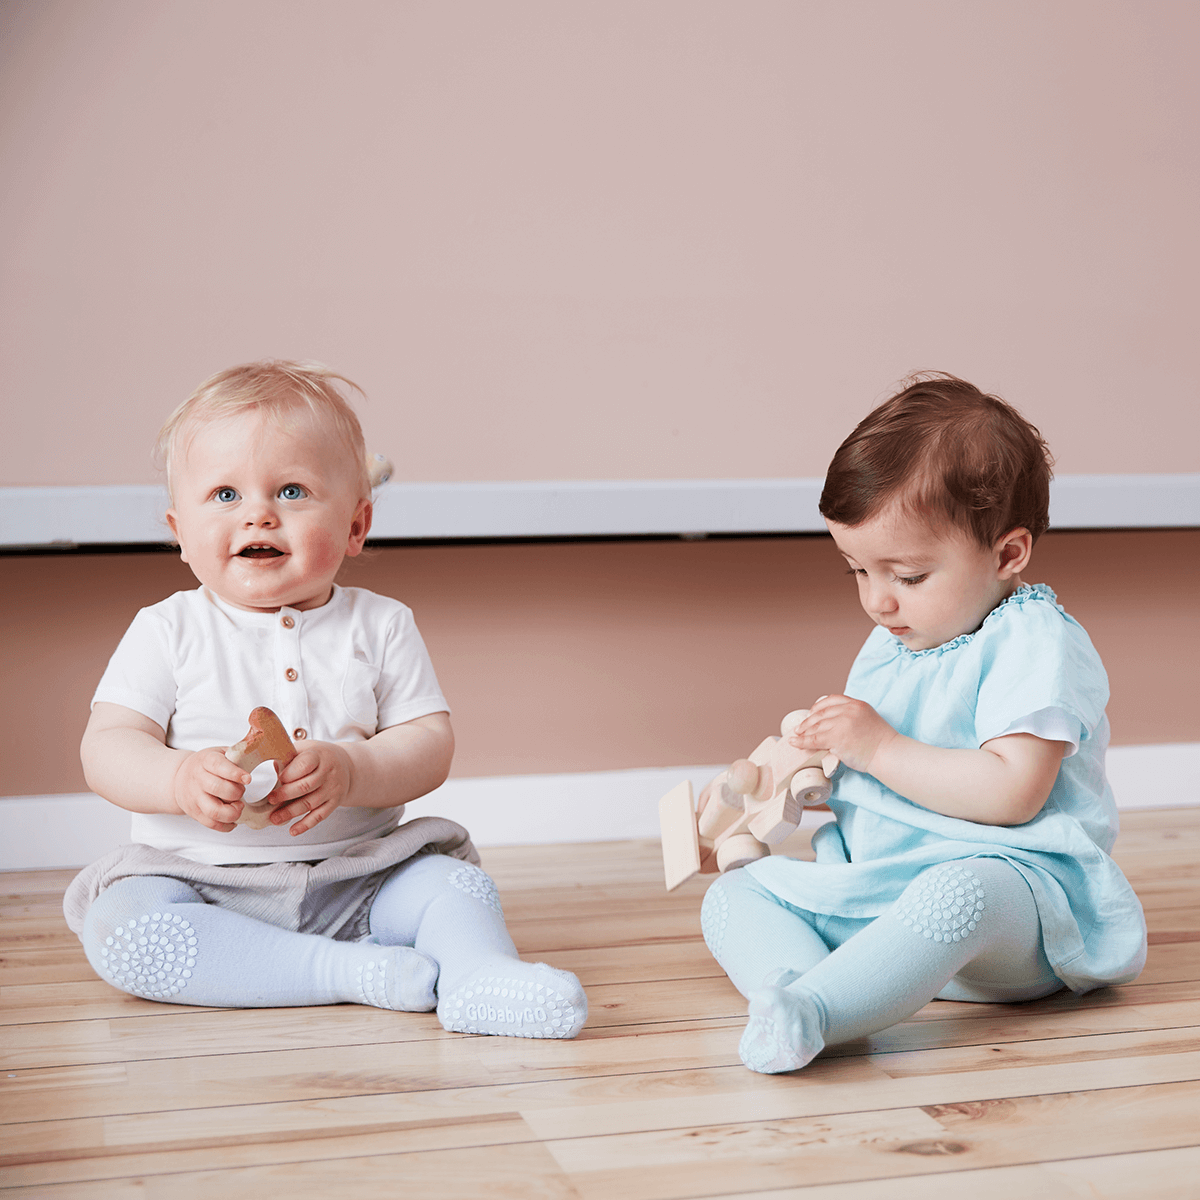 Billede af 2 babyer der sidder på gulvet og leger med legetøj.